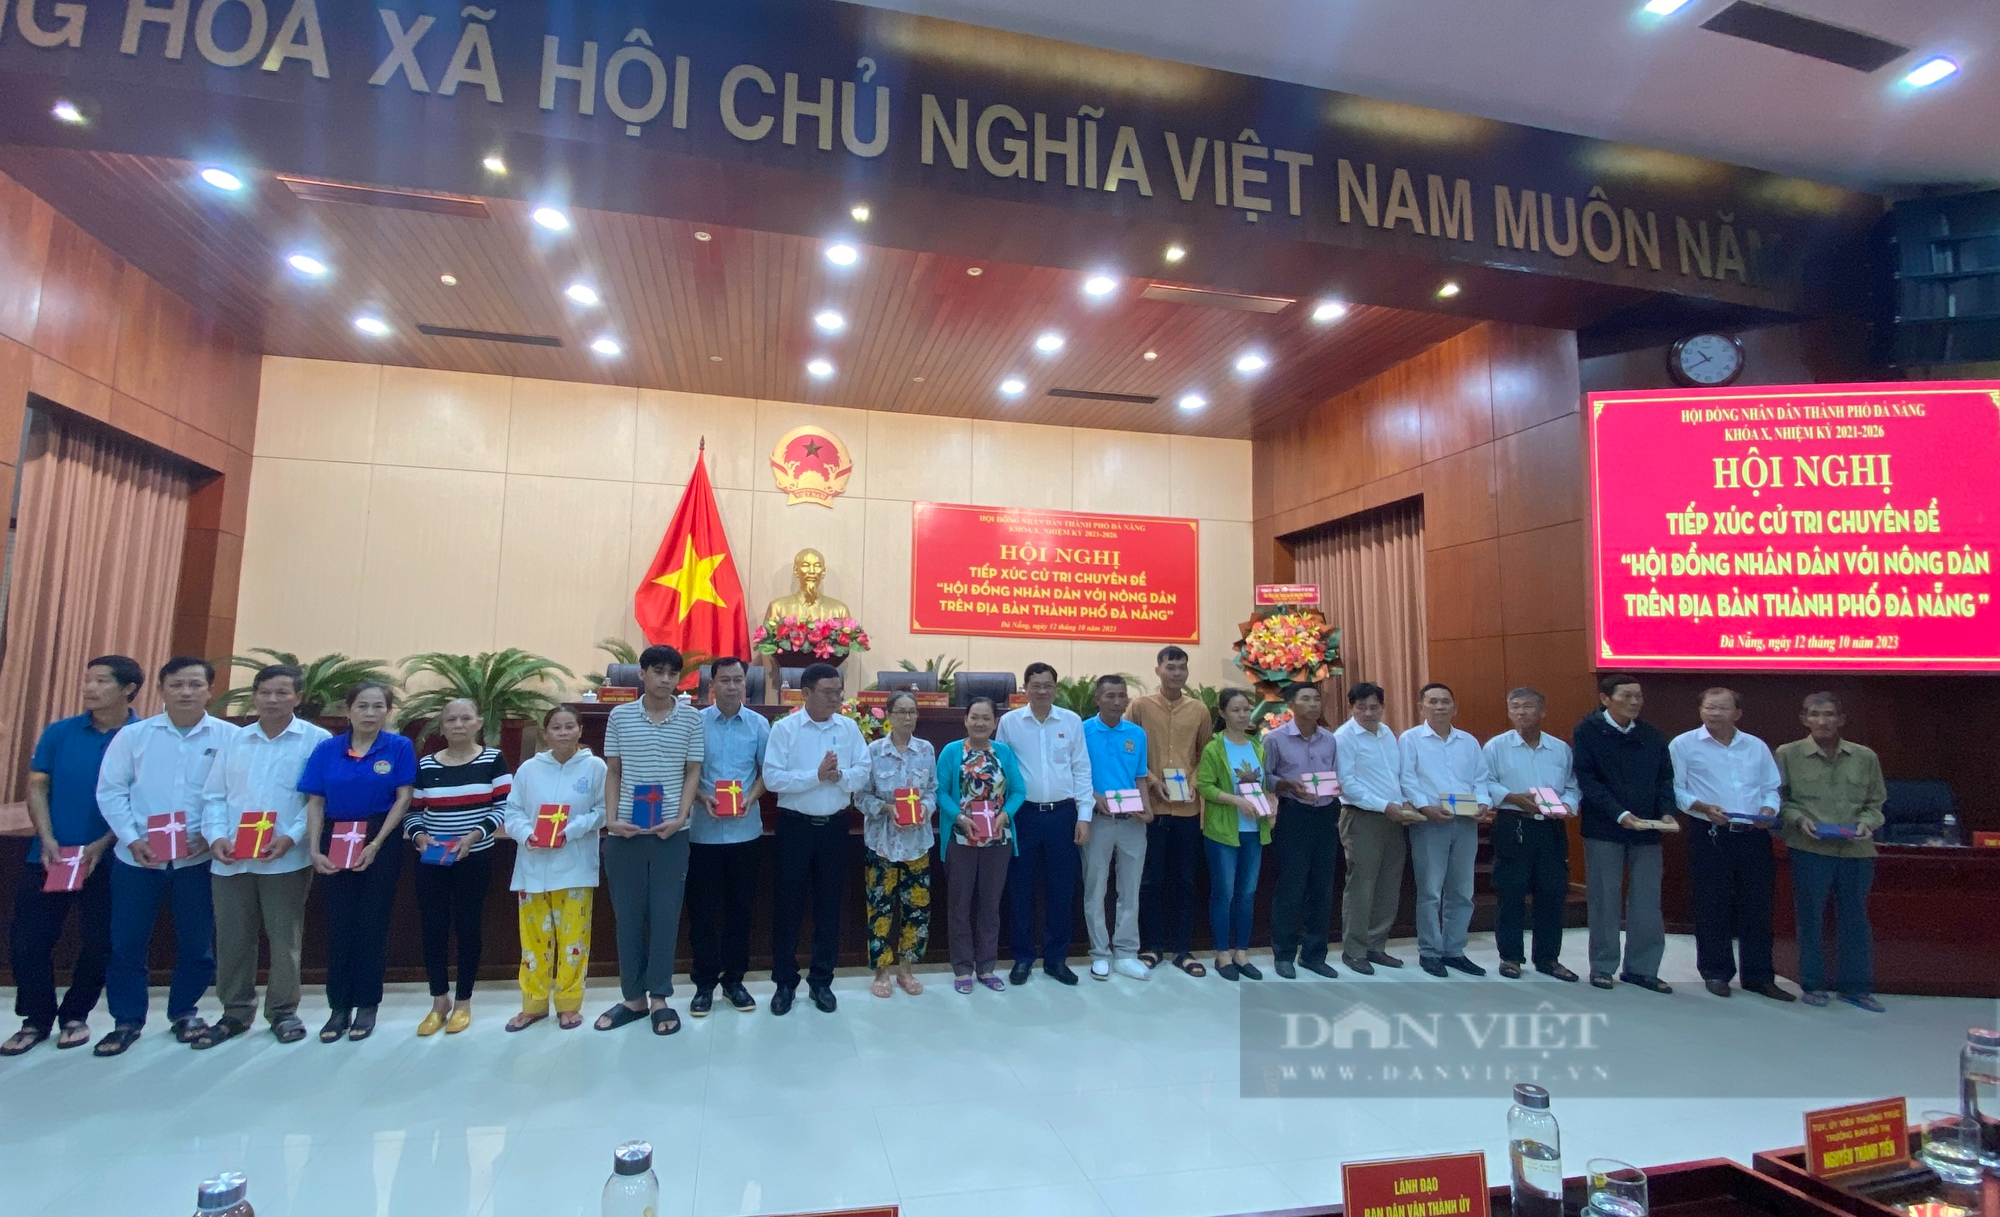 Đà Nẵng: Tiếp xúc cử tri chuyên đề Hội đồng nhân dân với nông dân thành phố - Ảnh 8.